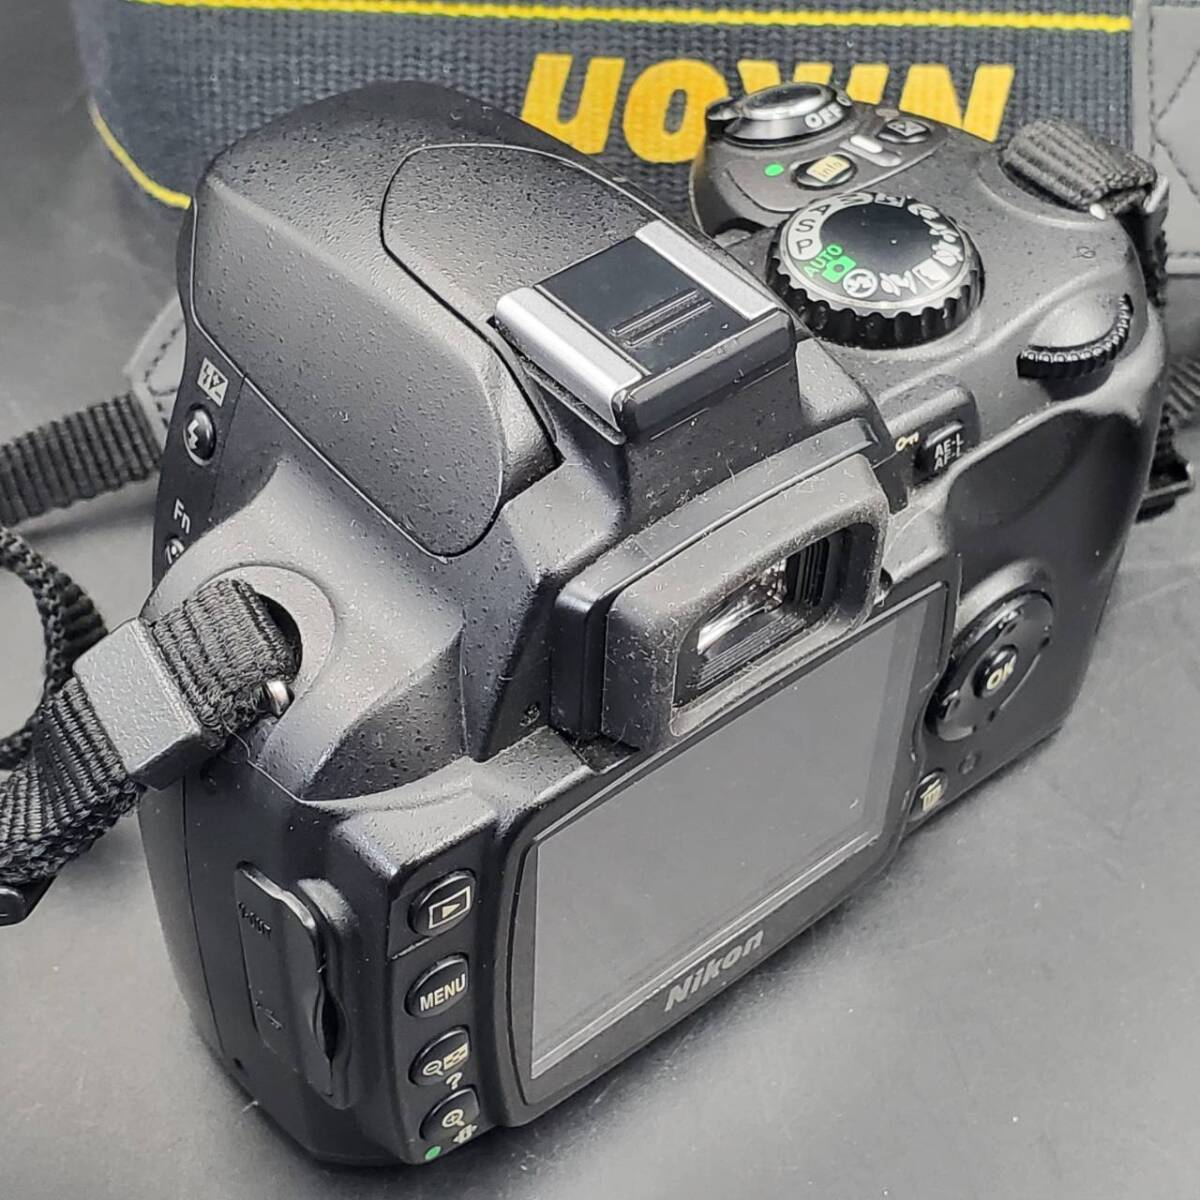 #25393B デジカメ ニコン Nikon D40x 【動作未確認/ 電源確認済み / 説明書・充電器付き】デジタルカメラ 撮影 写真 コンパクト _画像8